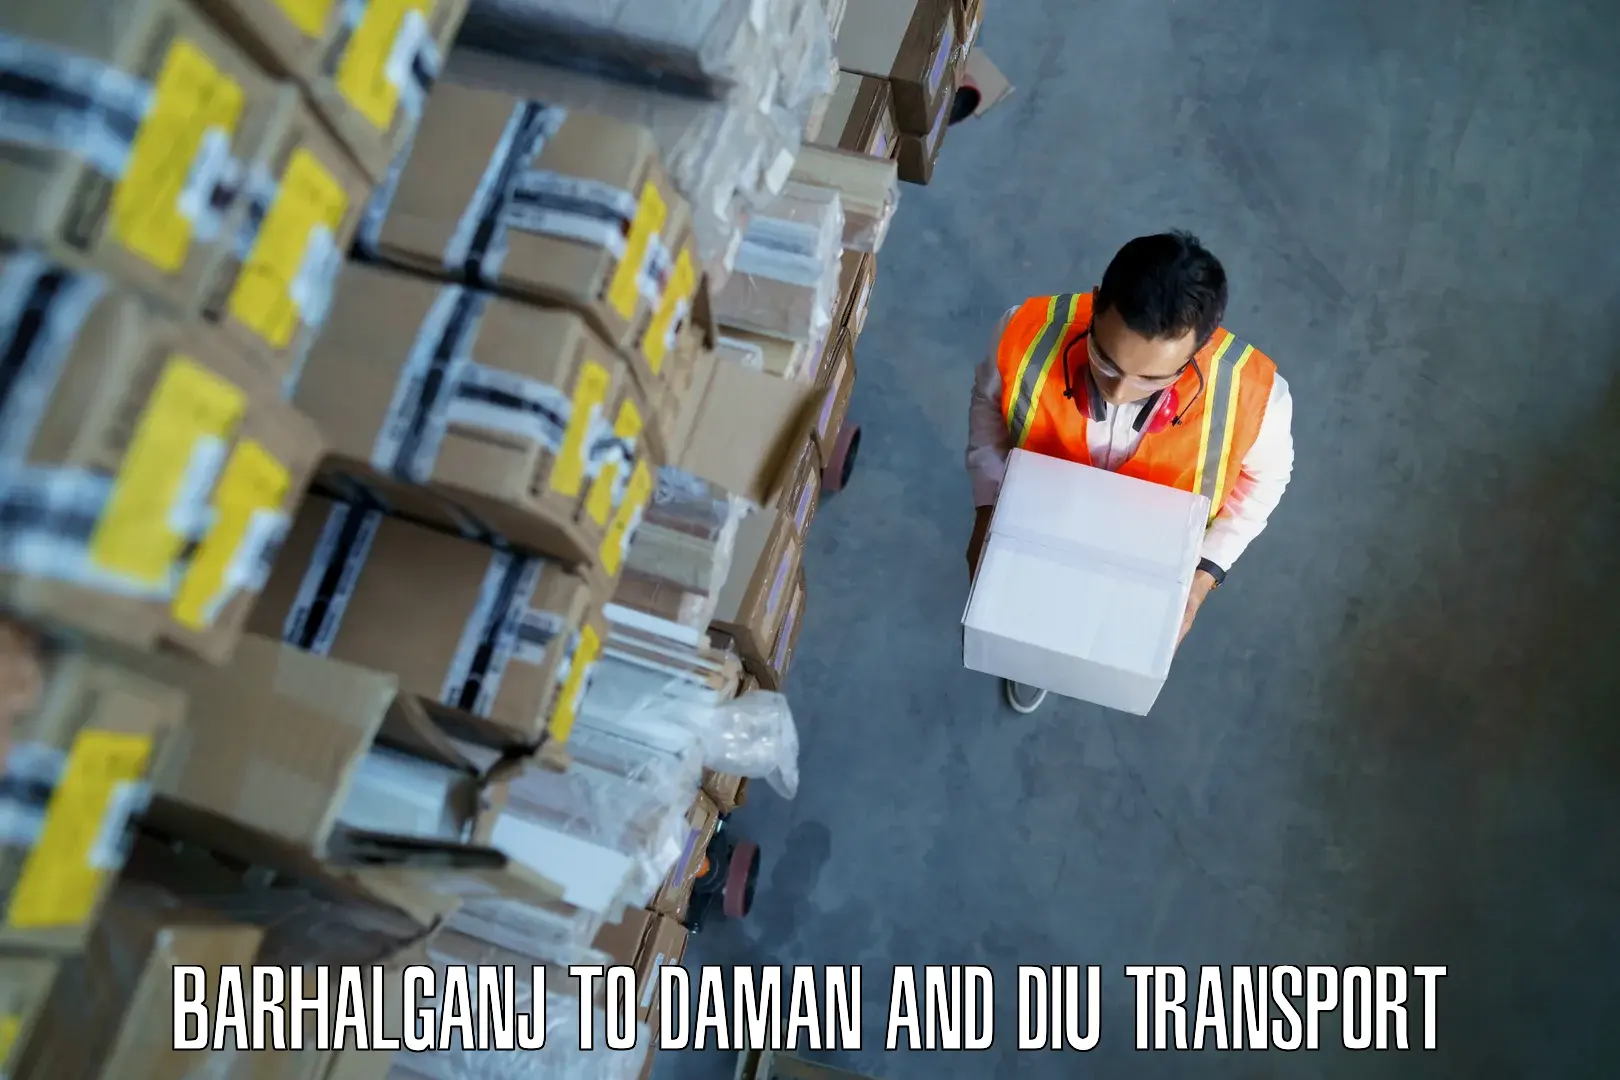 Furniture transport service Barhalganj to Daman